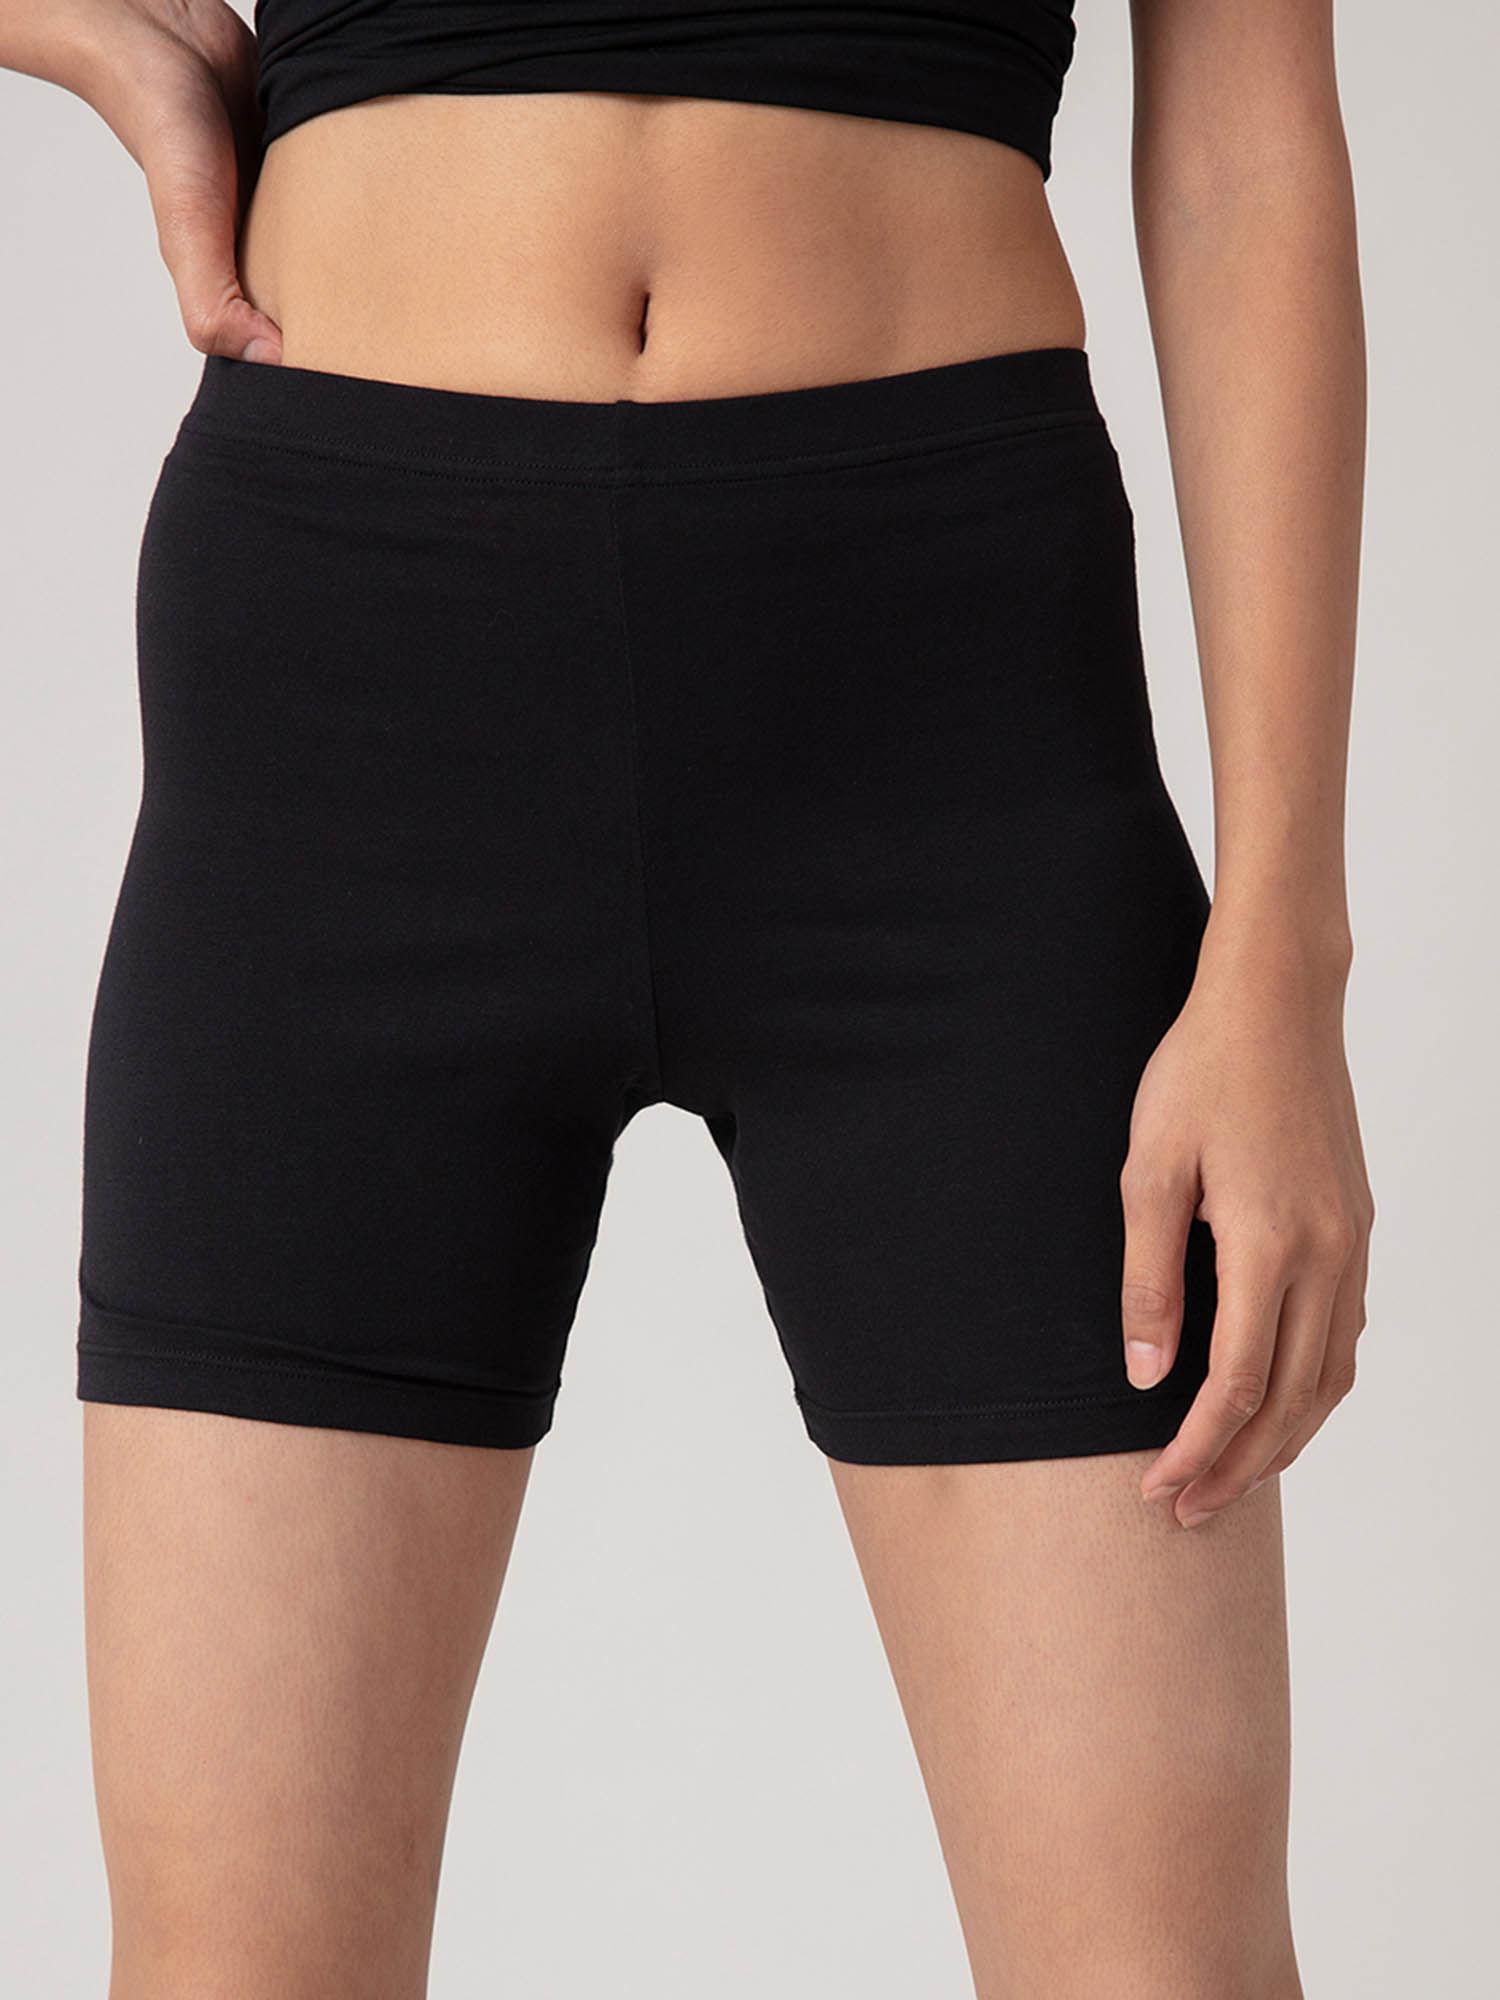 stretch cotton cycling shorts - black nyp083